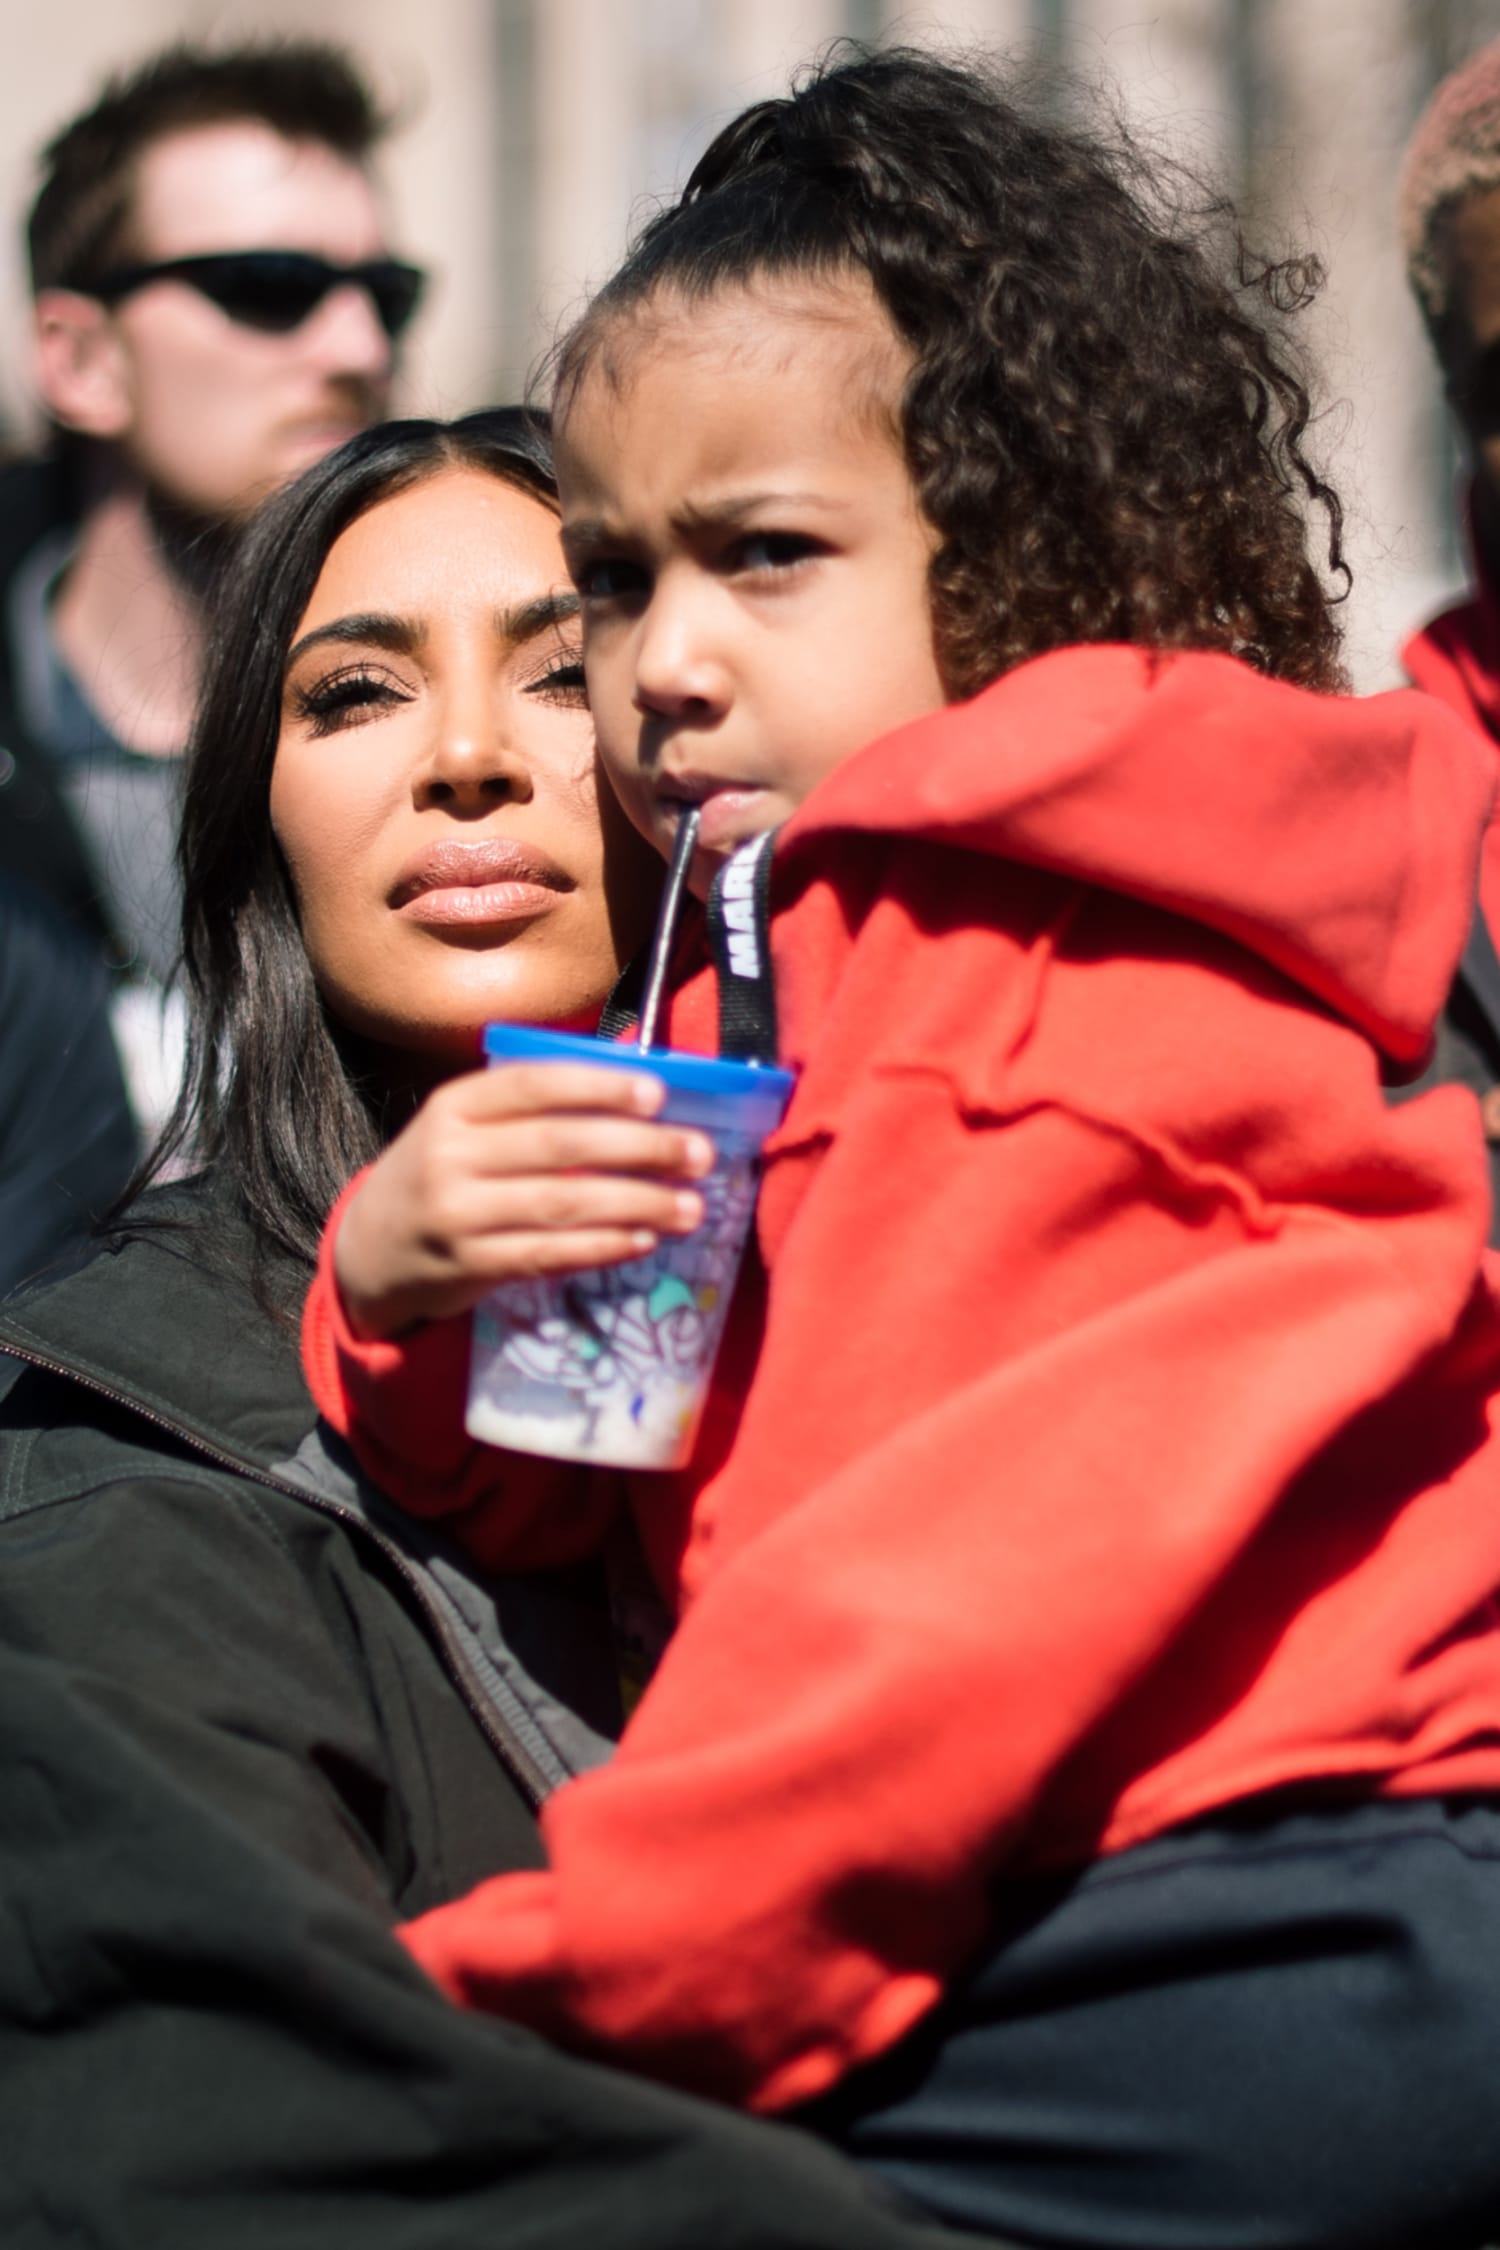 Kim Kardashian Threw Kanye West an Epic 41st Birthday Party: Photos